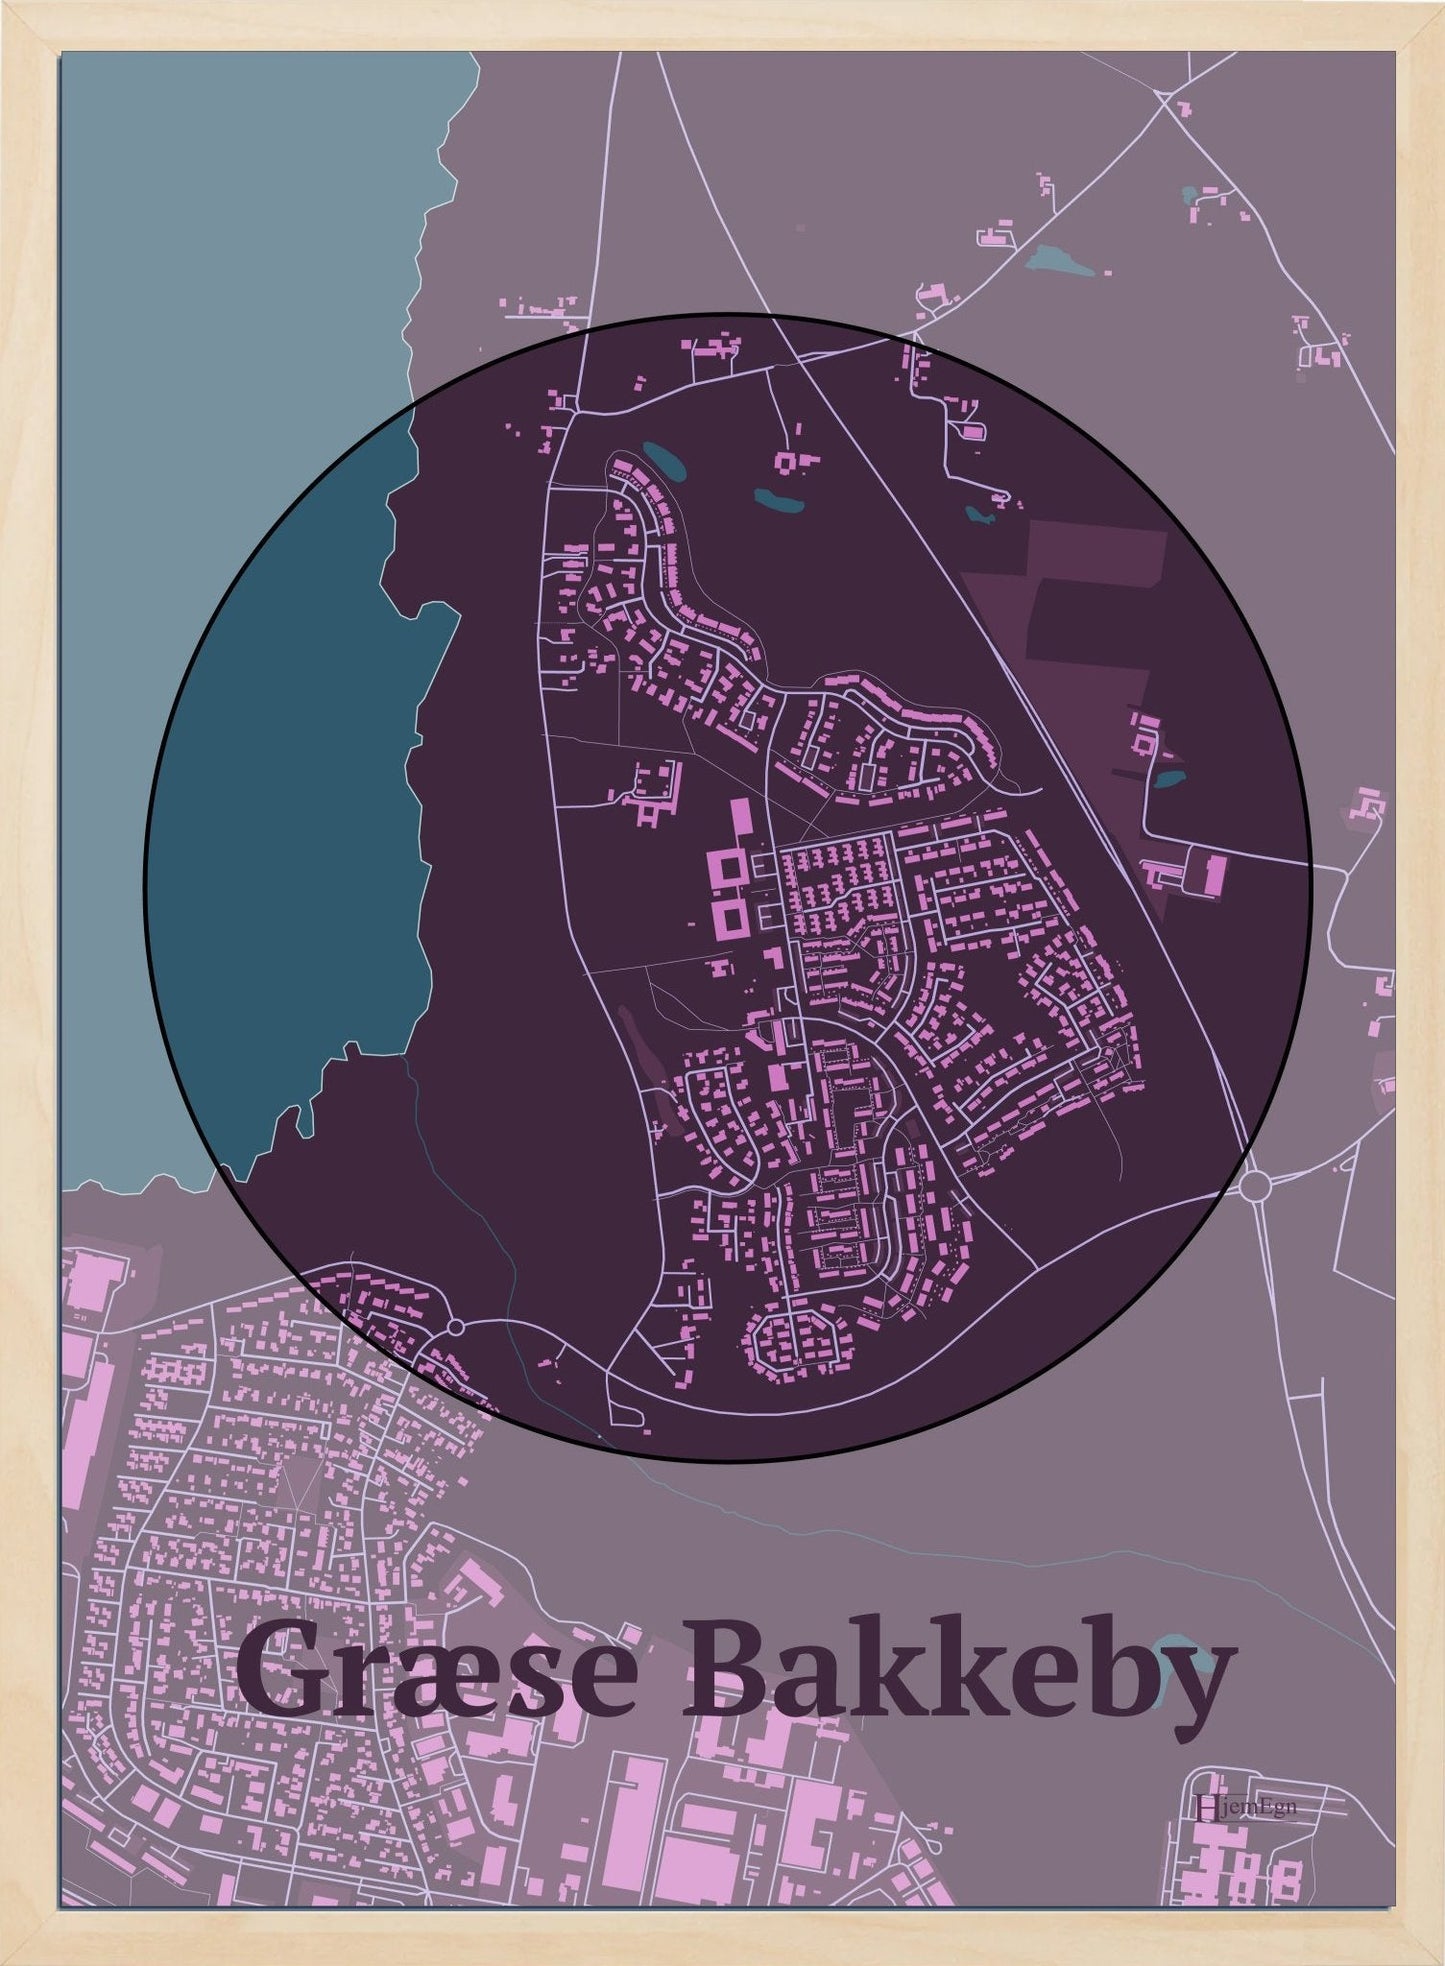 Græse Bakkeby plakat i farve mørk rød og HjemEgn.dk design centrum. Design bykort for Græse Bakkeby